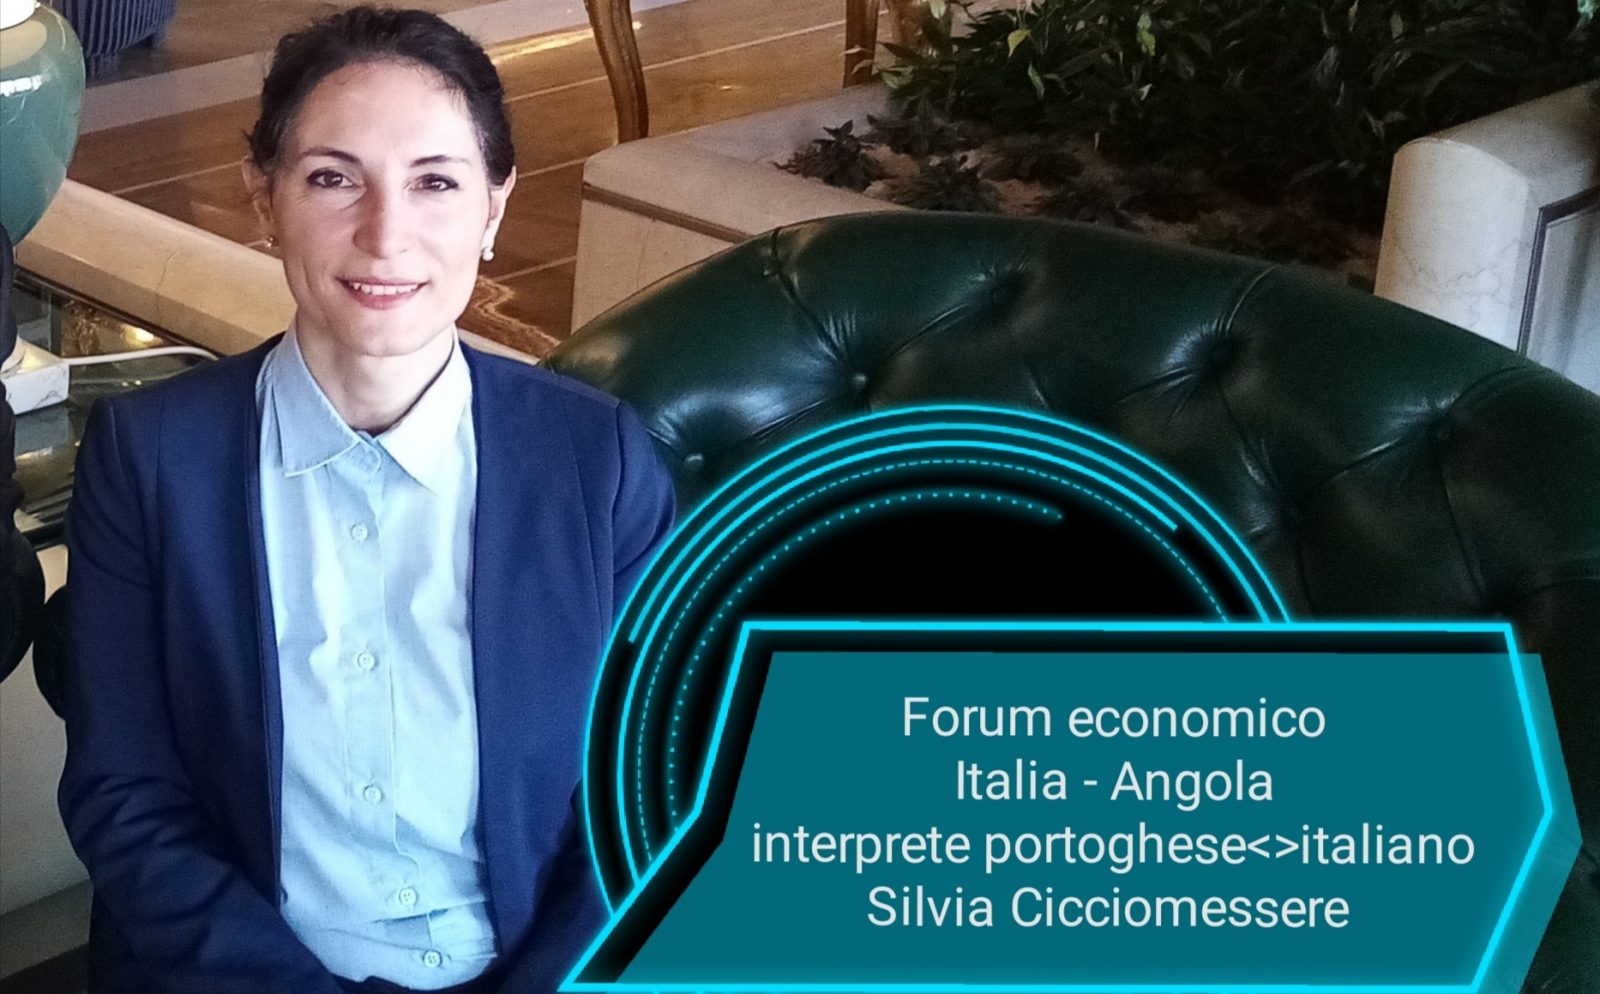 interprete portoghese italiano Roma forum economico italia angola